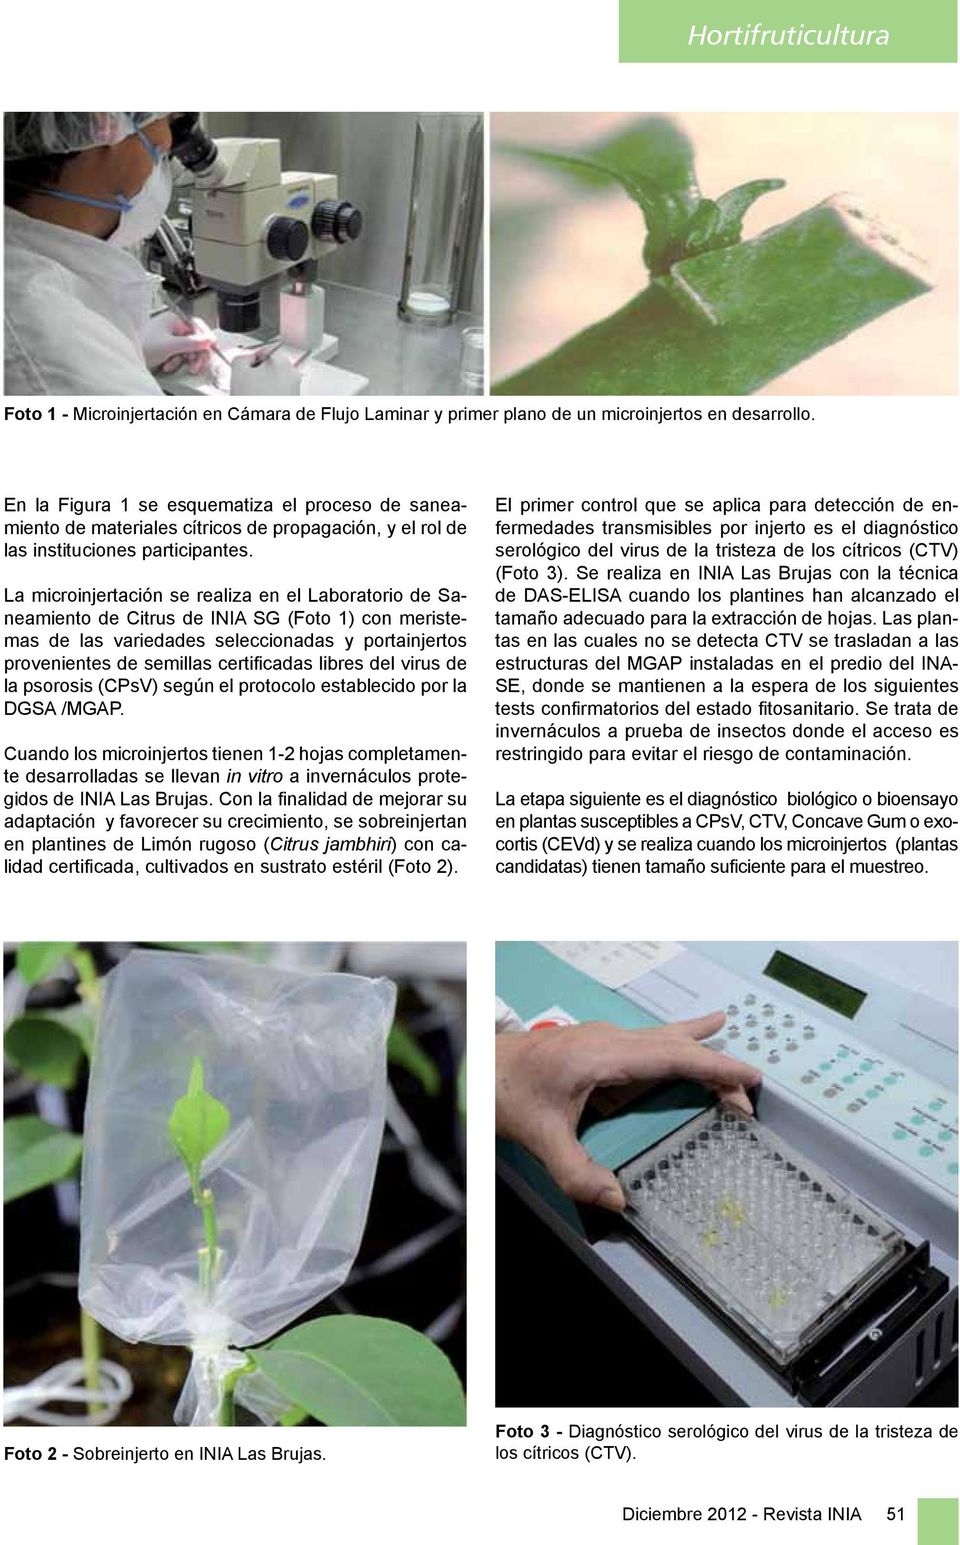 La microinjertación se realiza en el Laboratorio de Saneamiento de Citrus de INIA SG (Foto 1) con meristemas de las variedades seleccionadas y portainjertos provenientes de semillas certificadas